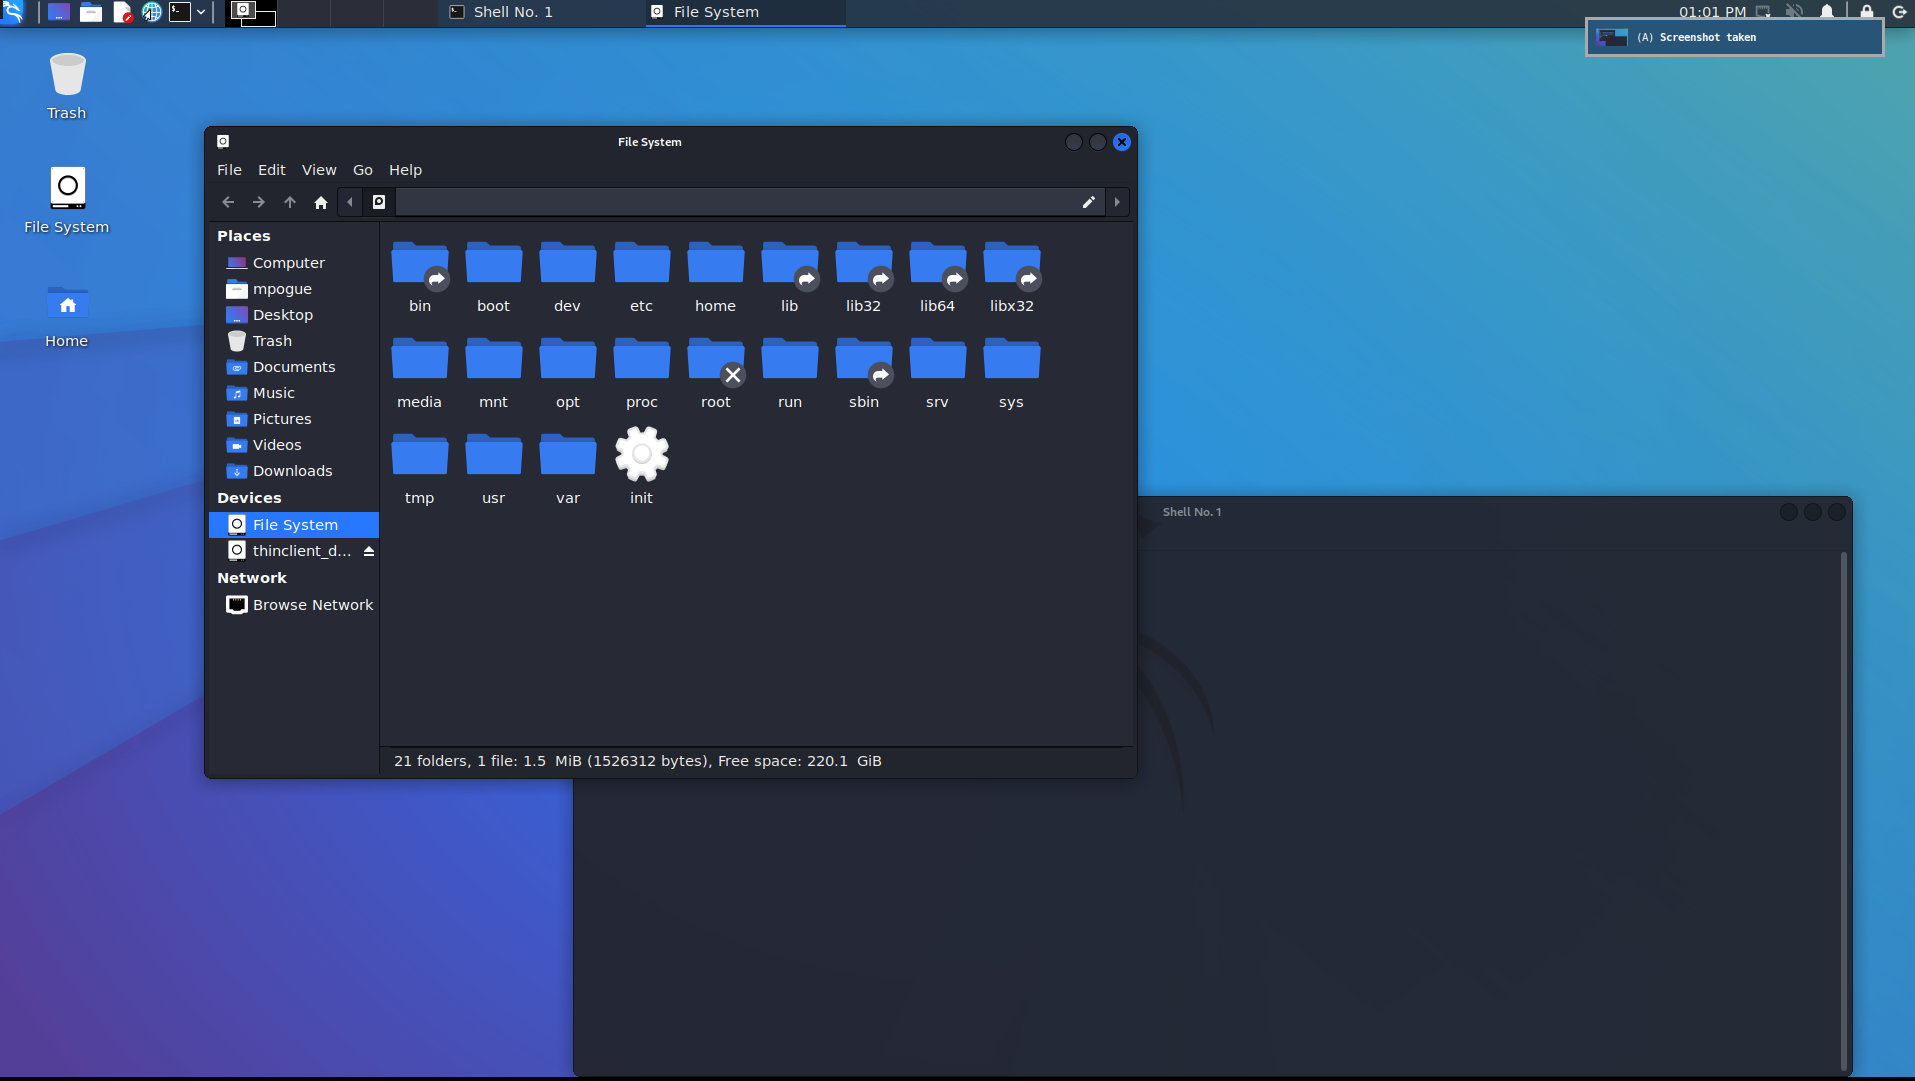 Kali Linux Desktop on Windows Subsystem for Linux